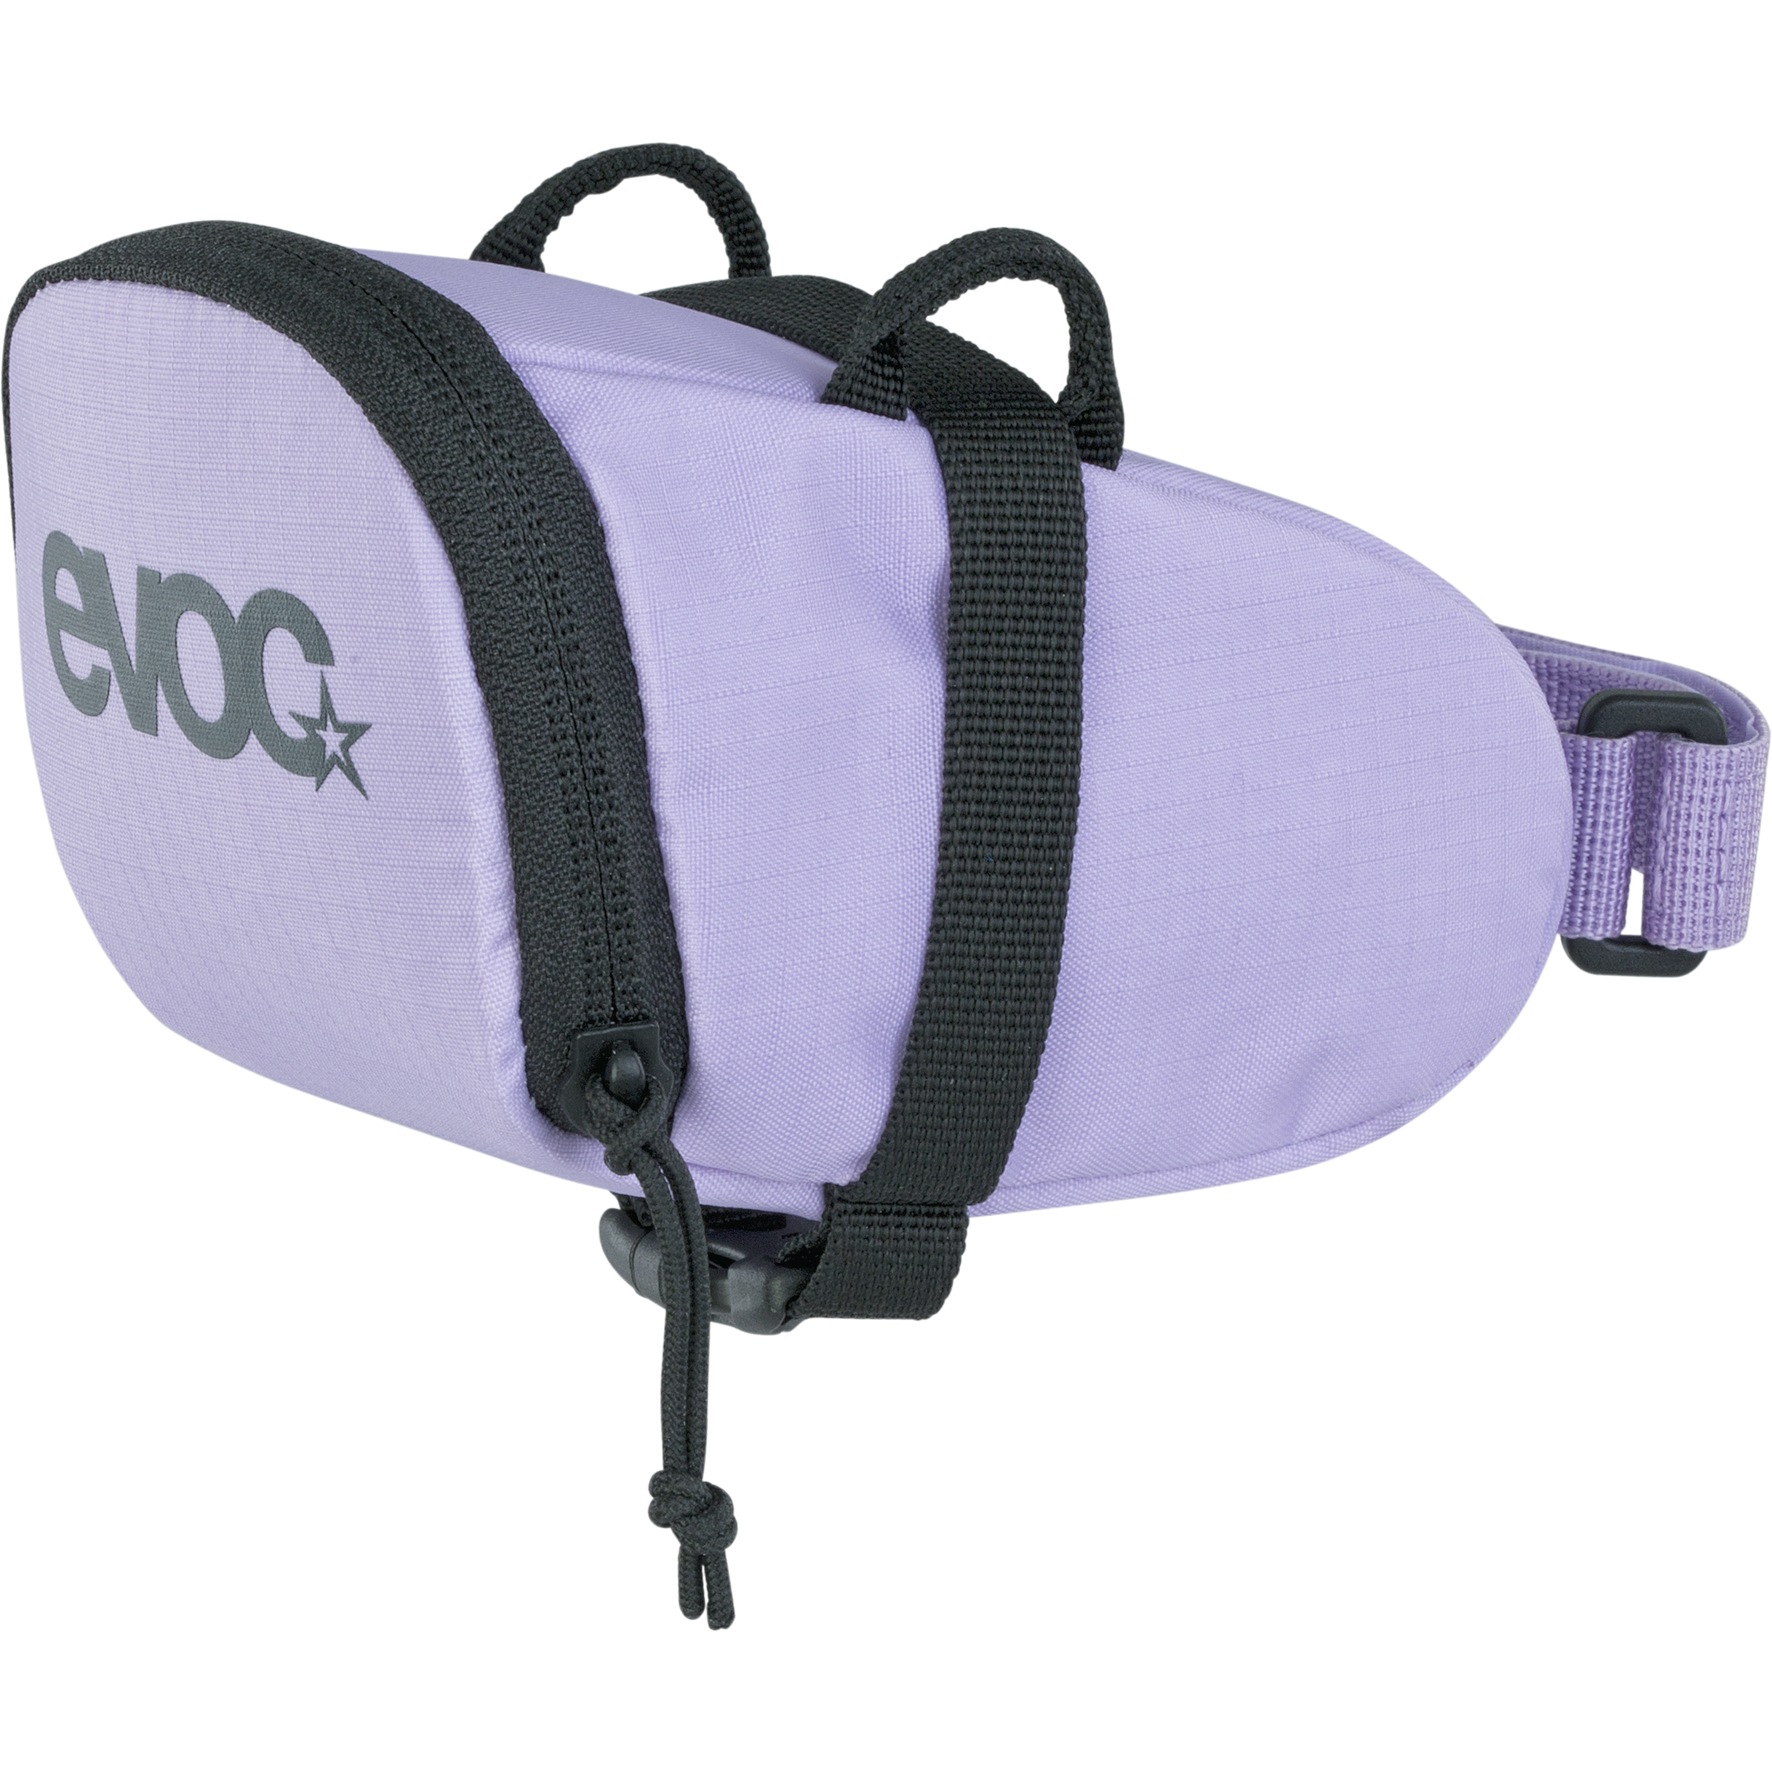 Produktbild von EVOC Seat Bag 0.7L Satteltasche - Multicolour